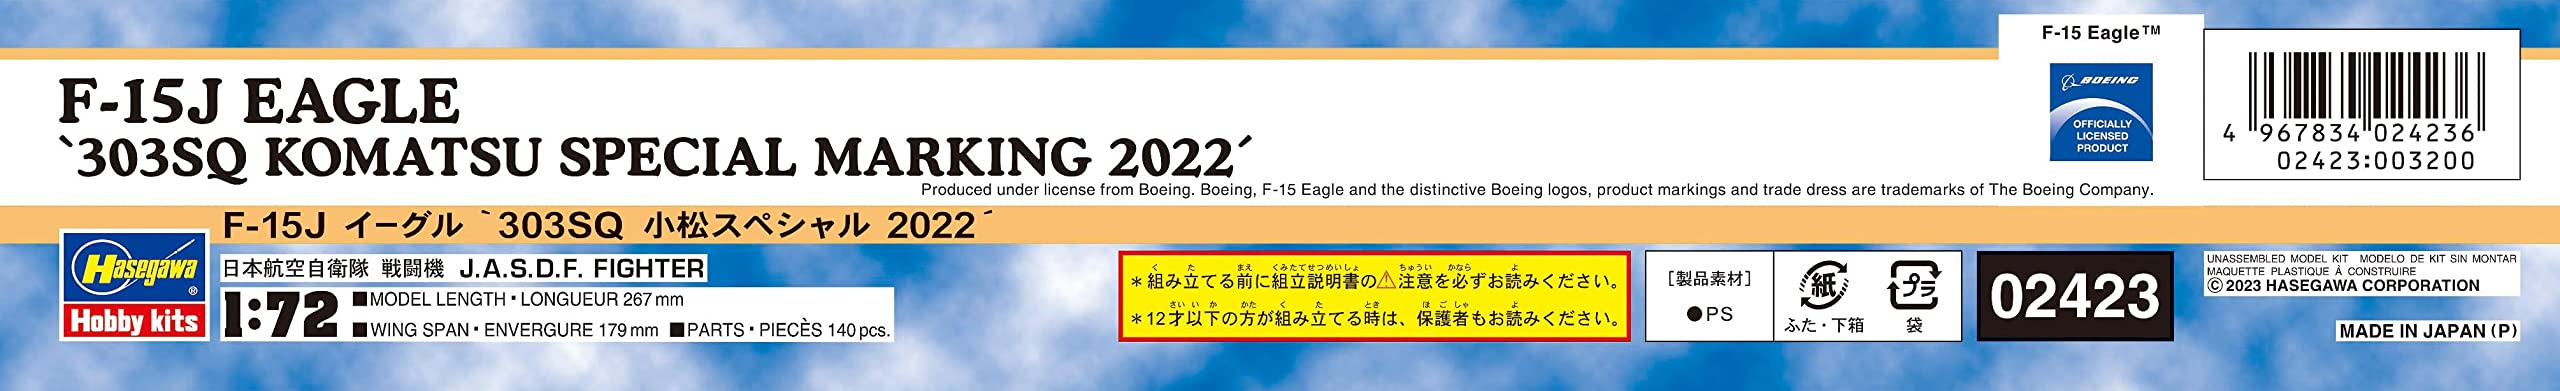 Hasegawa 1/72 F-15J EAGLE 303SQ KOMATSU SPECIAL MARKING 2022 Model kit 2423 NEW_3